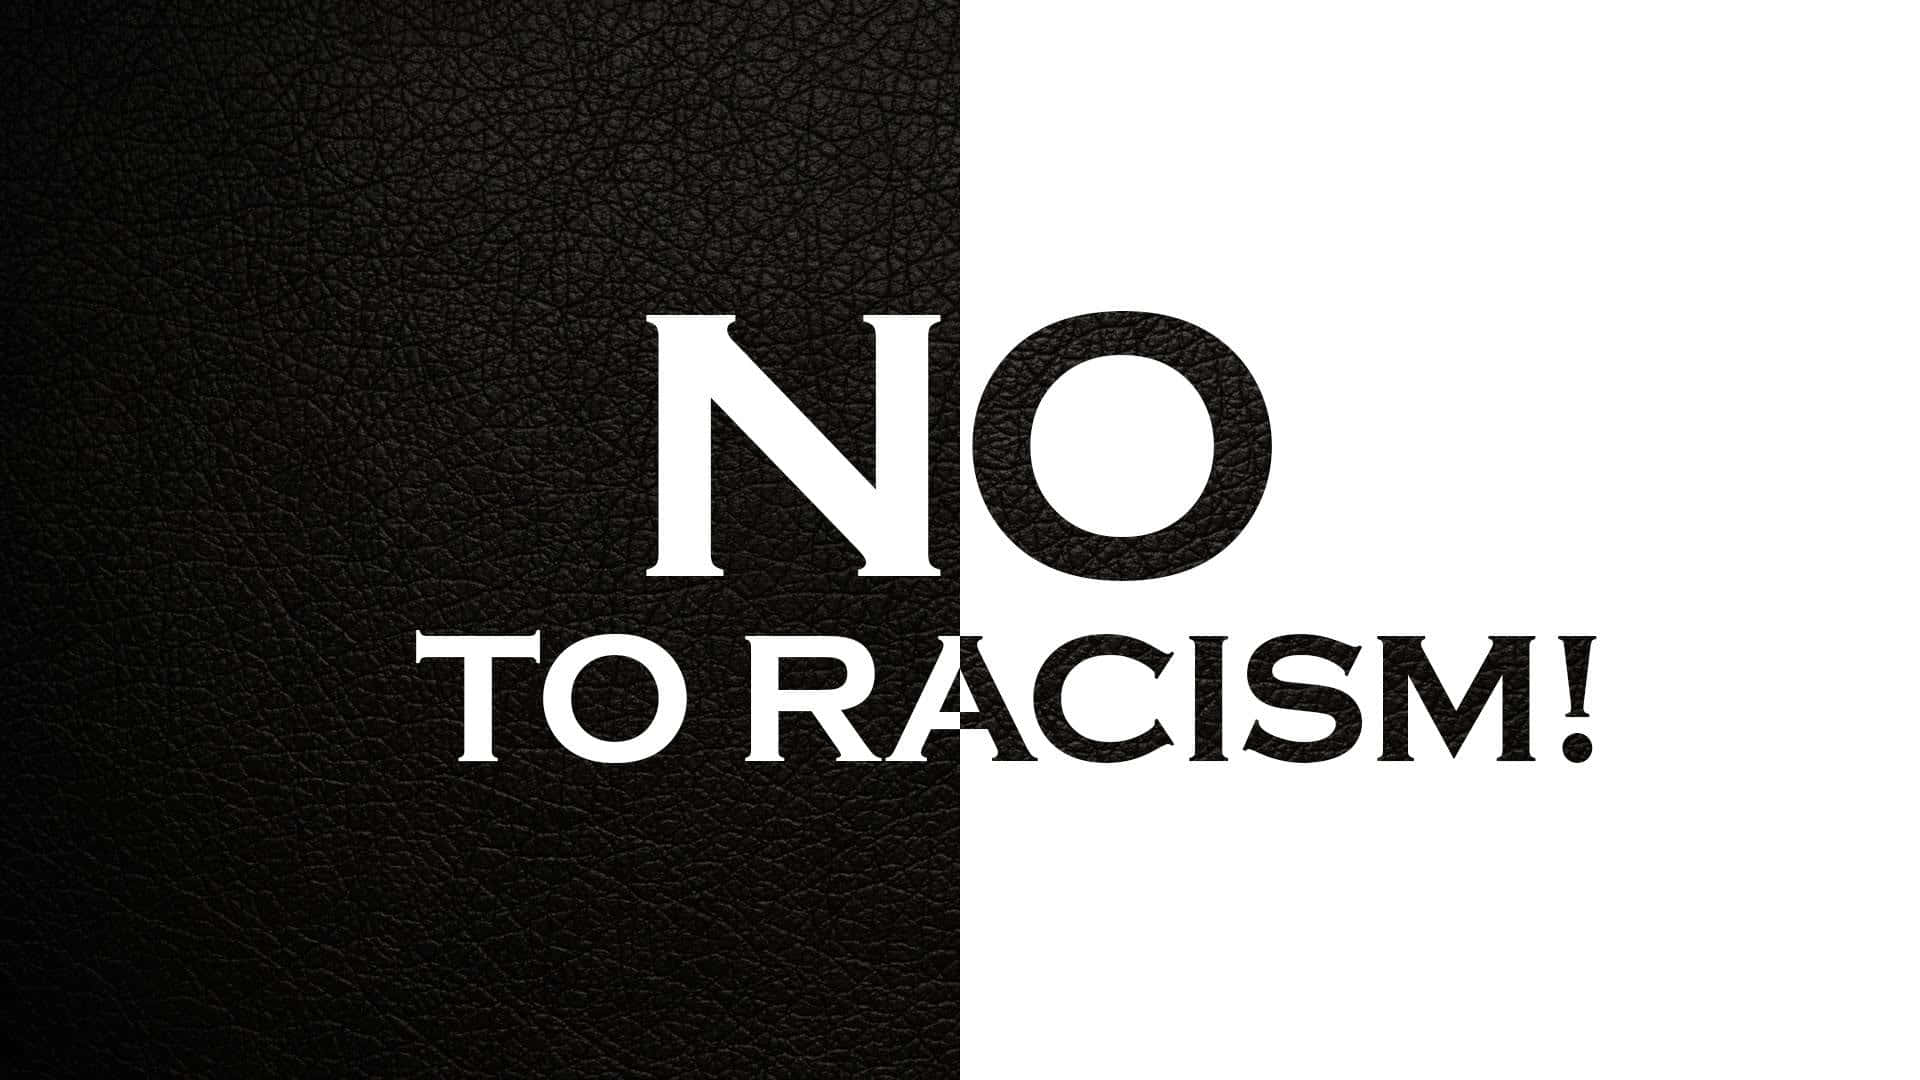 Slogande Racismo Em Preto E Branco. Papel de Parede